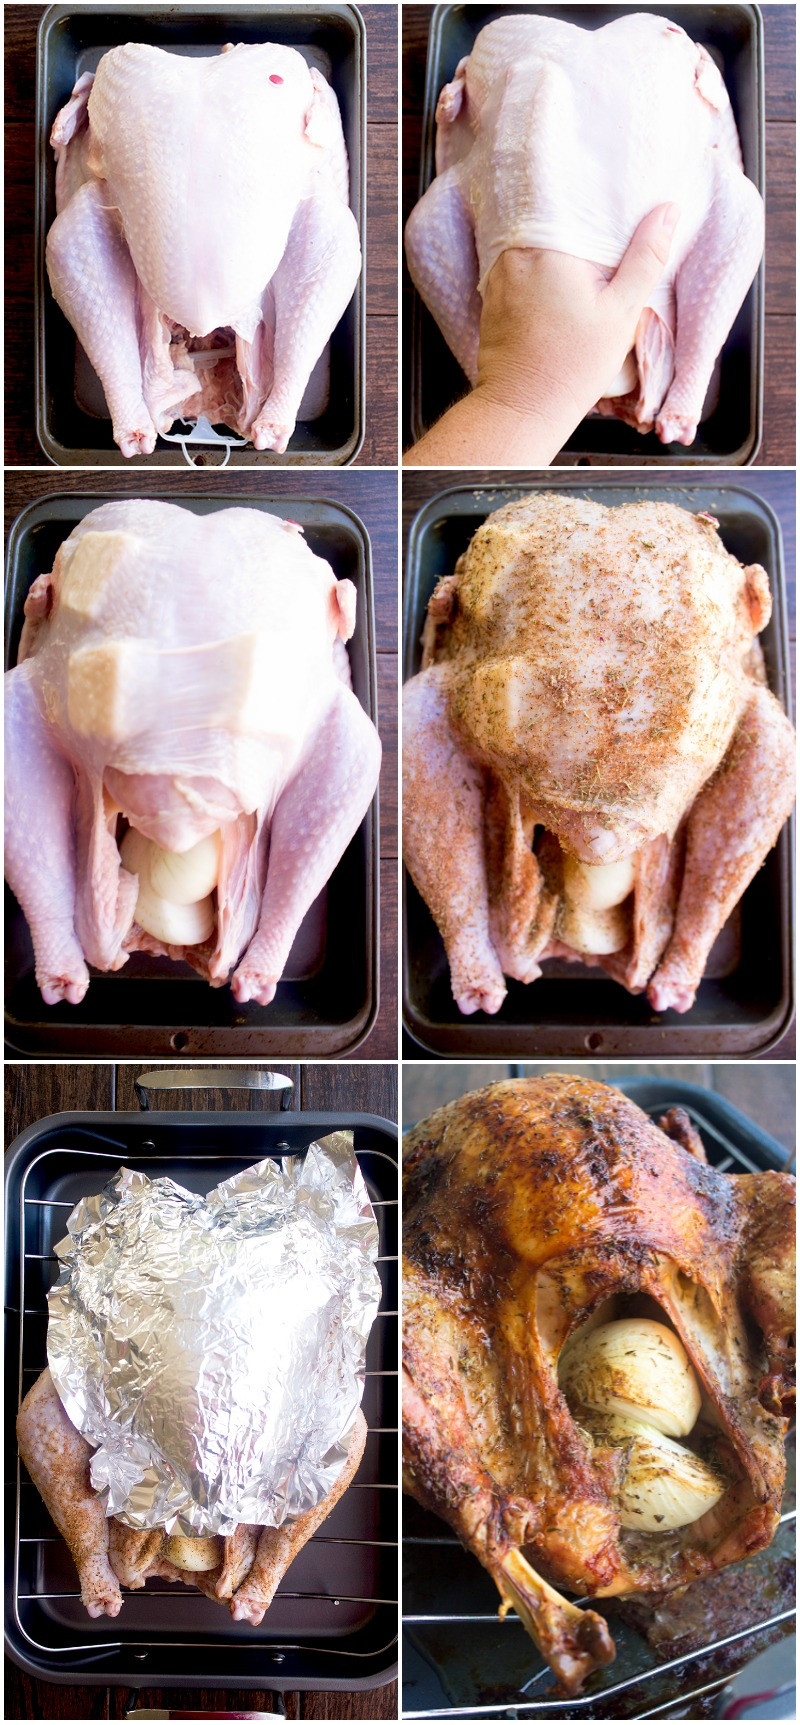 The Best Thanksgiving Turkey Recipe
 Best Thanksgiving Turkey Recipe How to Cook a Turkey